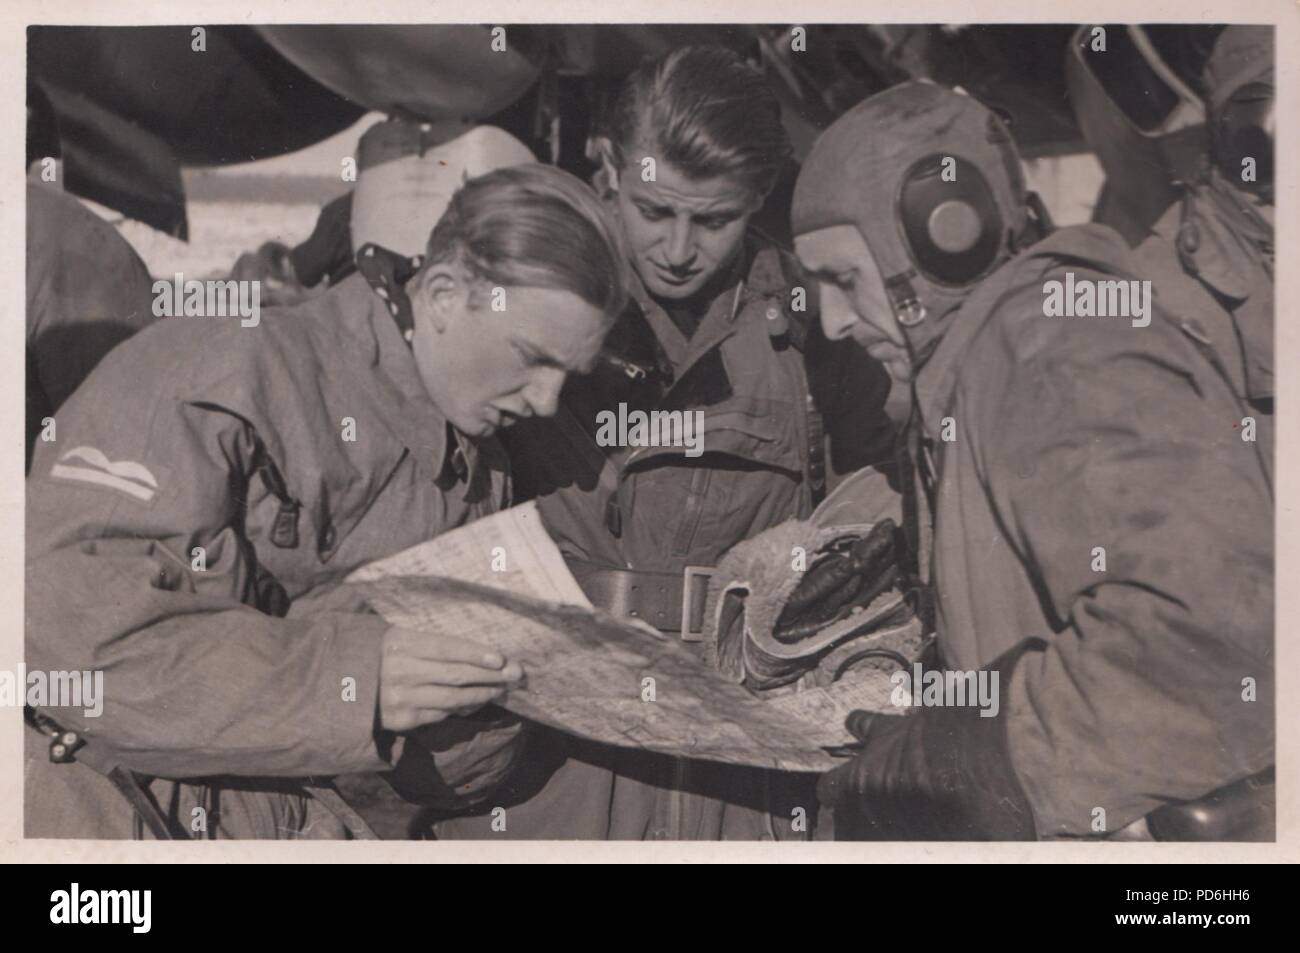 Droit de l'album photo de l'Oberleutnant Oscar Müller de la Kampfgeschwader 1 : Leutnant Maier (à gauche) explique le plan de vol Leutnant Oscar Müller (centre) et les autres membres d'équipage du 5./KG 1 à l'Aérodrome de DNO, Russie en1942. Banque D'Images